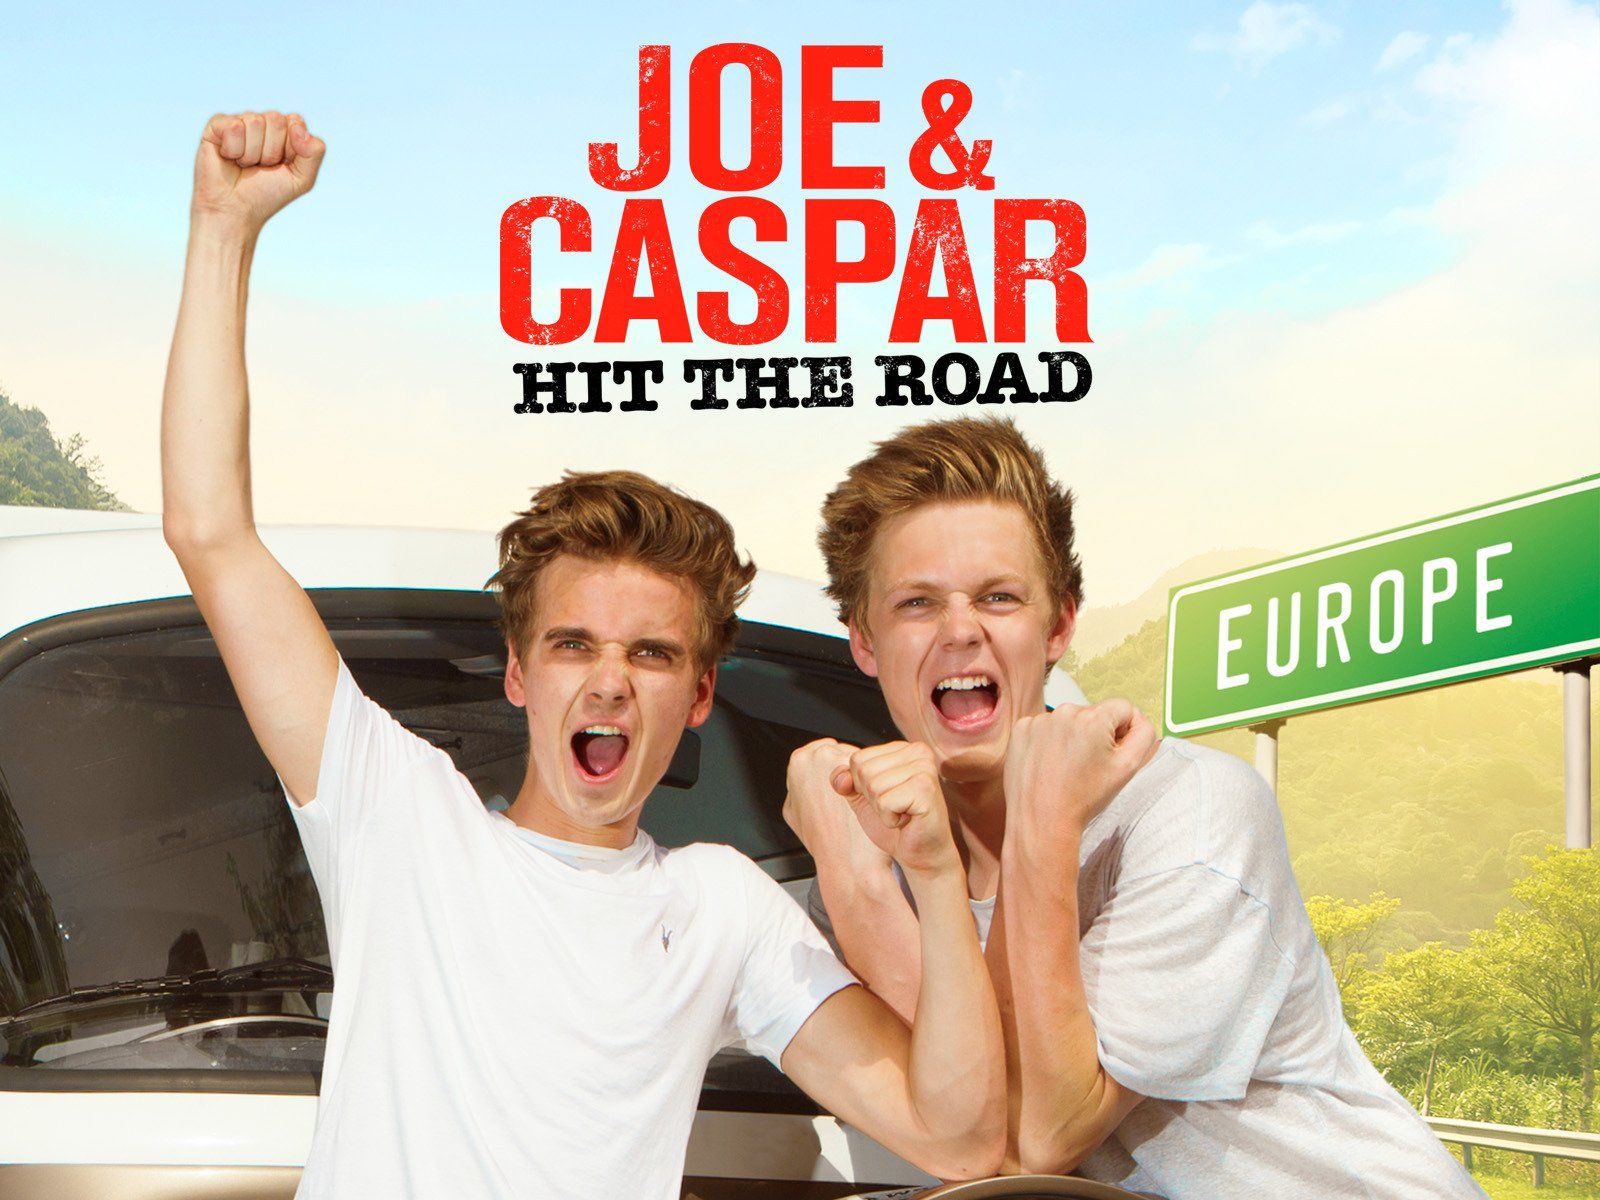 Watch Joe & Caspar Hit the Road